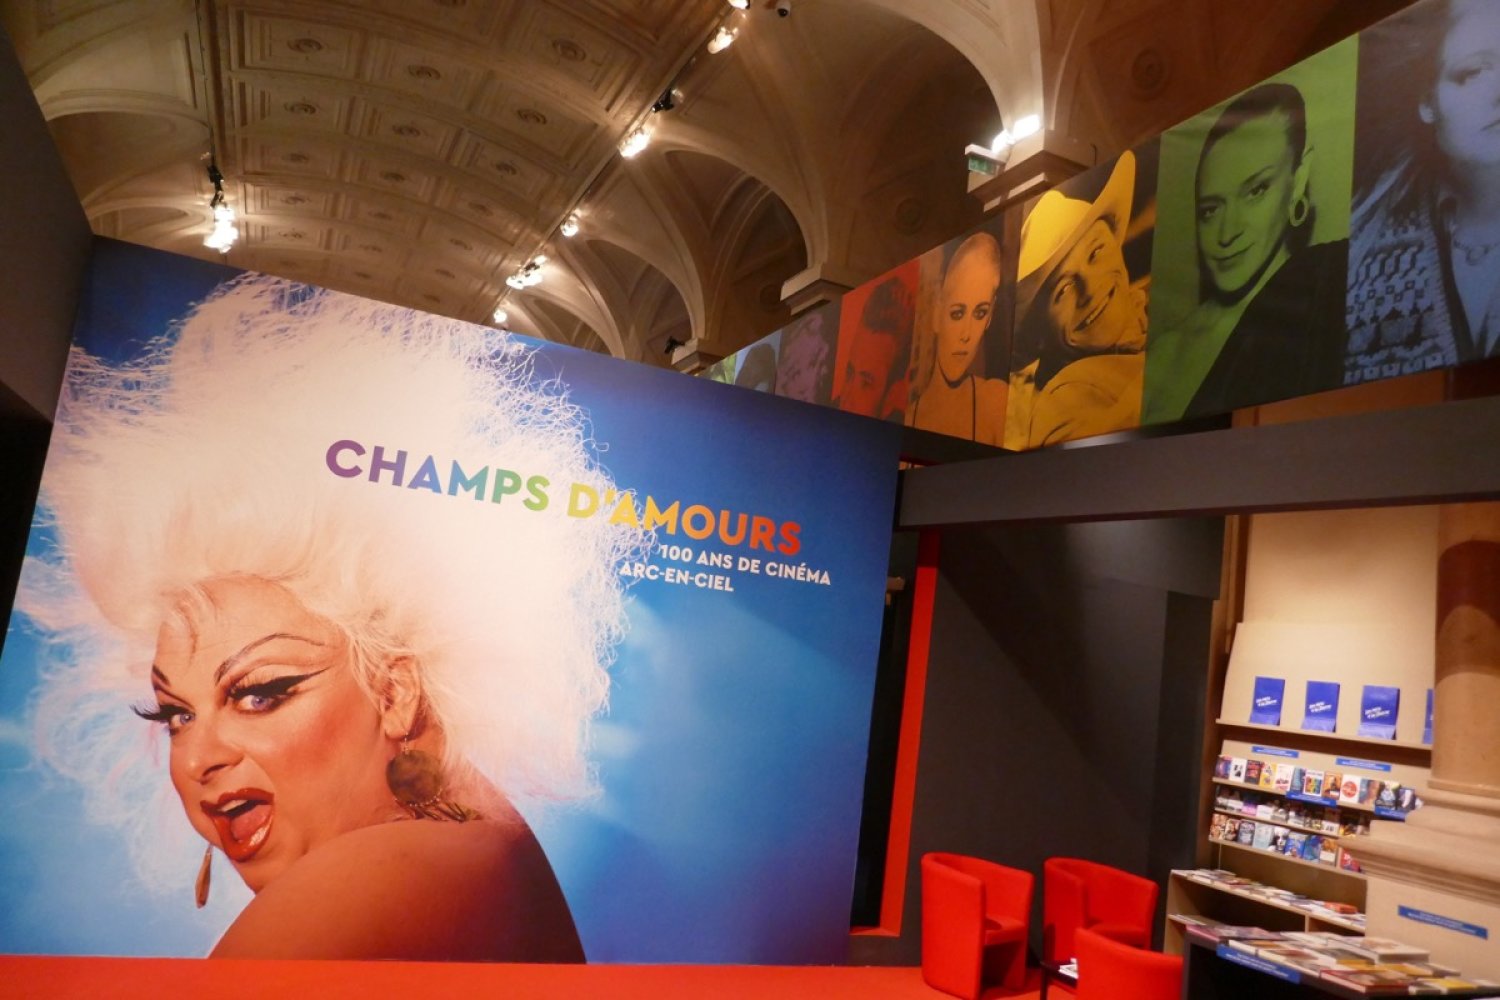 Exposition Champs d'Amours, 100 ans de cinéma arc-en-ciel à l'Hôtel de Ville de Paris